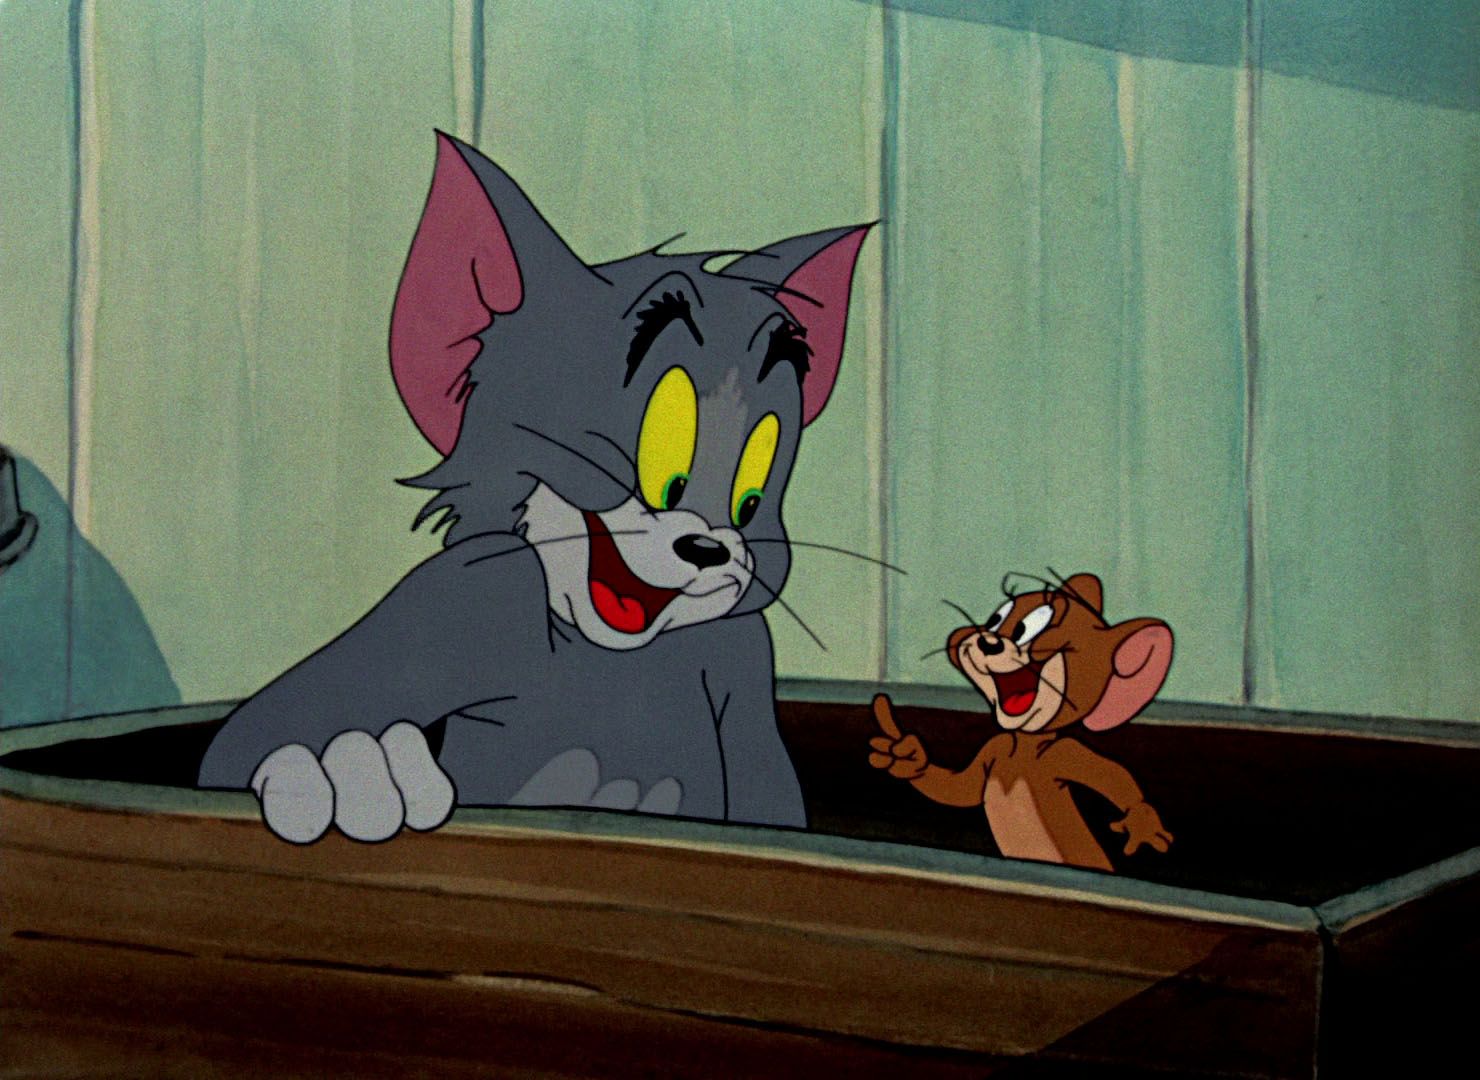 Том и джерри 78. Том и Джерри 1960. Том и Джерри (Tom and Jerry) 1940. Том и Джерри 1996.